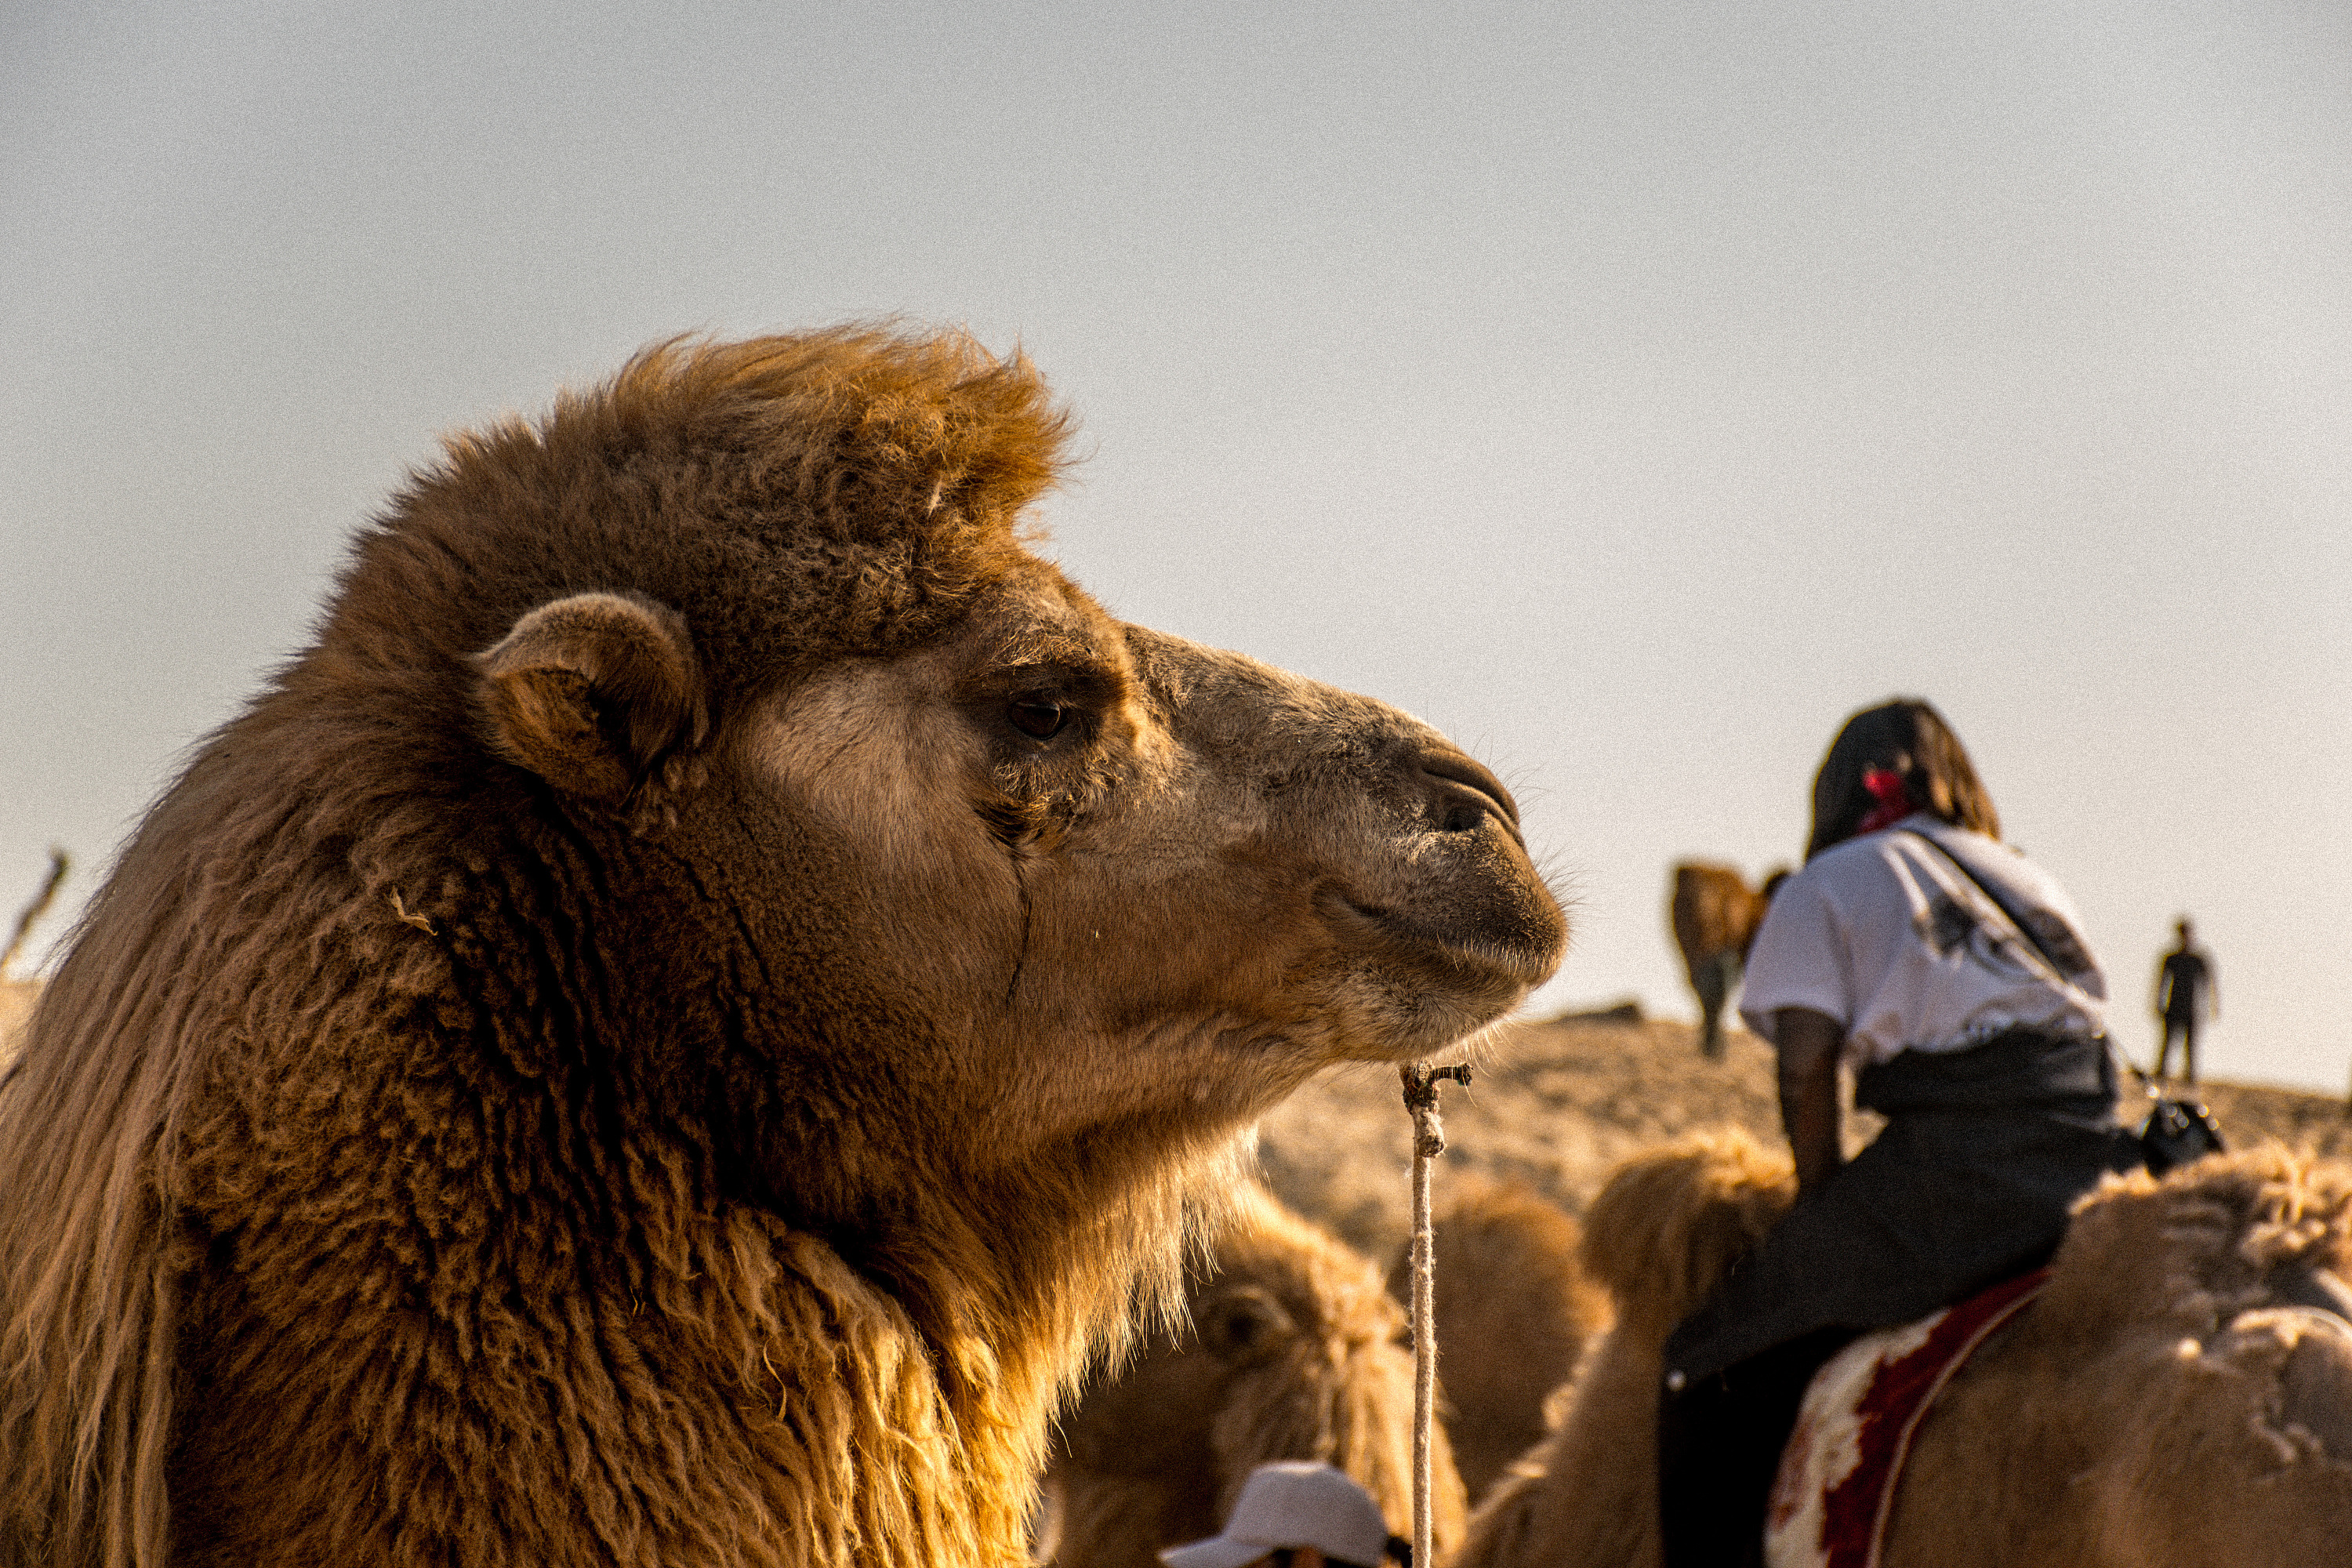 骆驼` s鼻子 库存图片. 图片 包括有 特写镜头, 关闭, 沙子, 骆驼, 东部, 鼻子, 种族, 团结 - 110832147